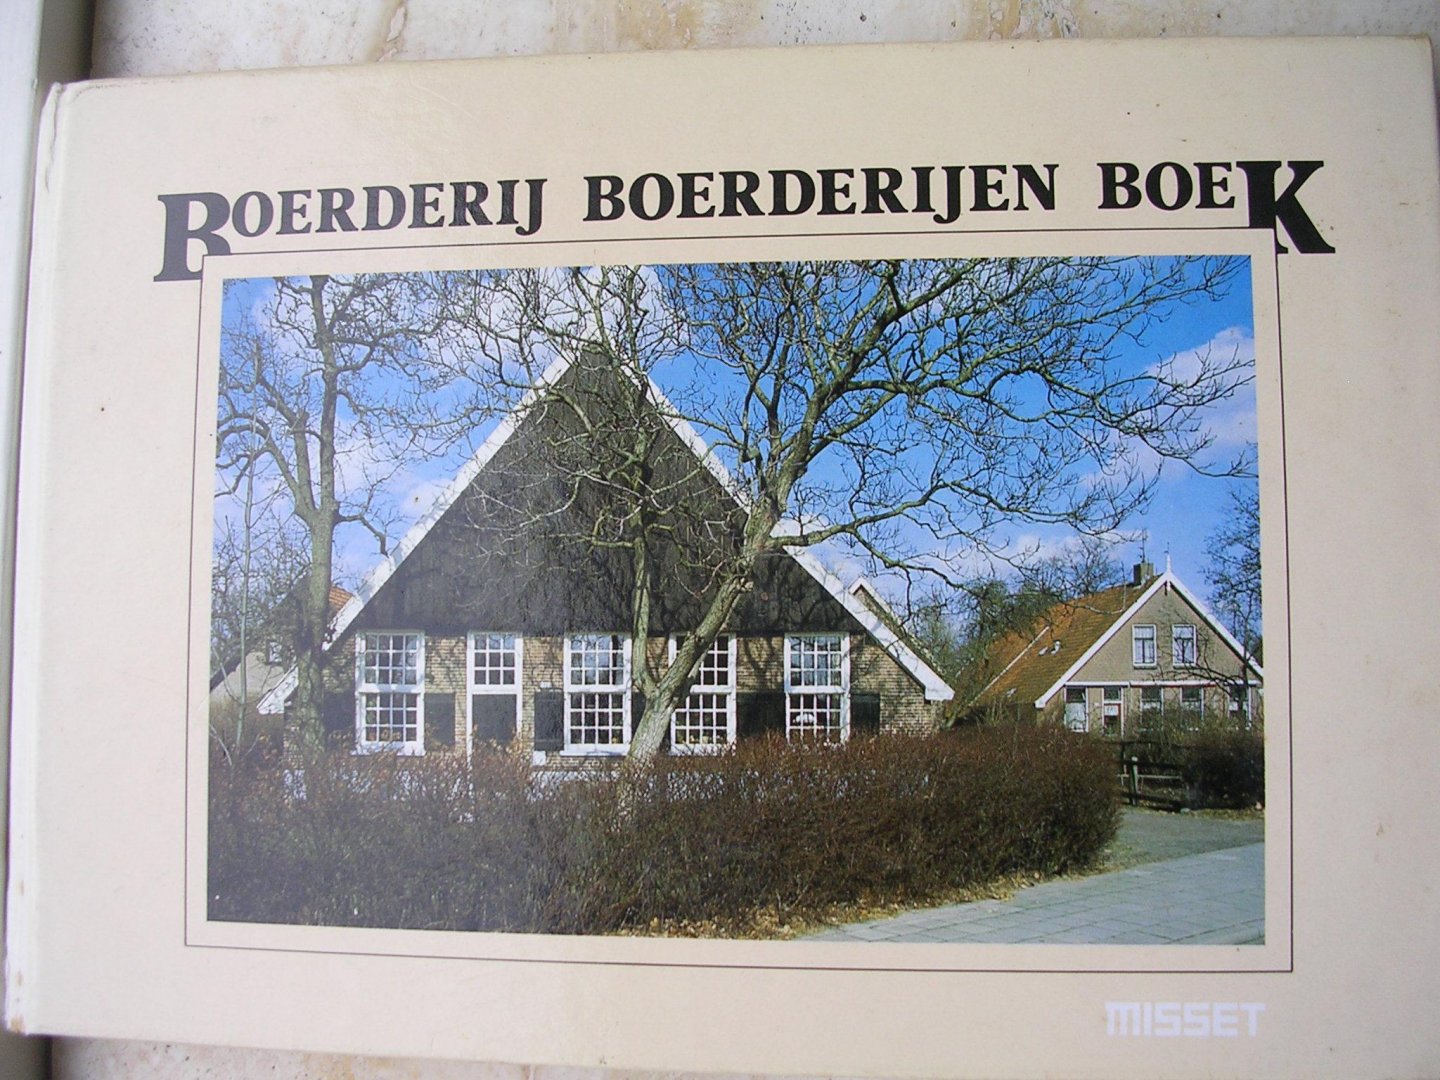 Molen van der S J. - BOERDERIJEN BOEK